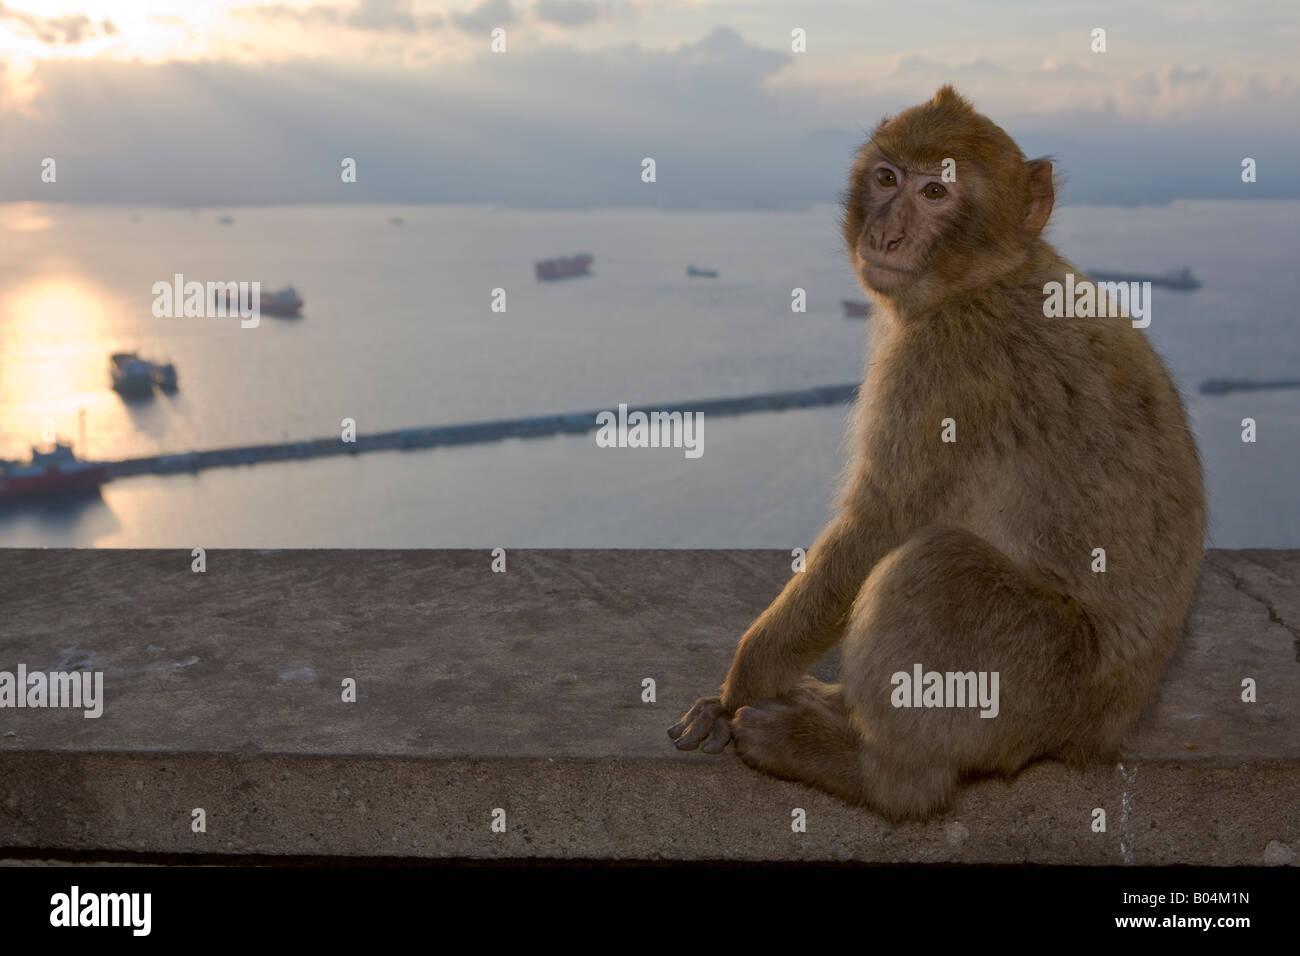 Young Barbary Macaque (aka Barbary Ape), Macaca sylvanus, at the apes den on The Rock of Gibraltar, Gibraltar, Costa de la Luz Stock Photo